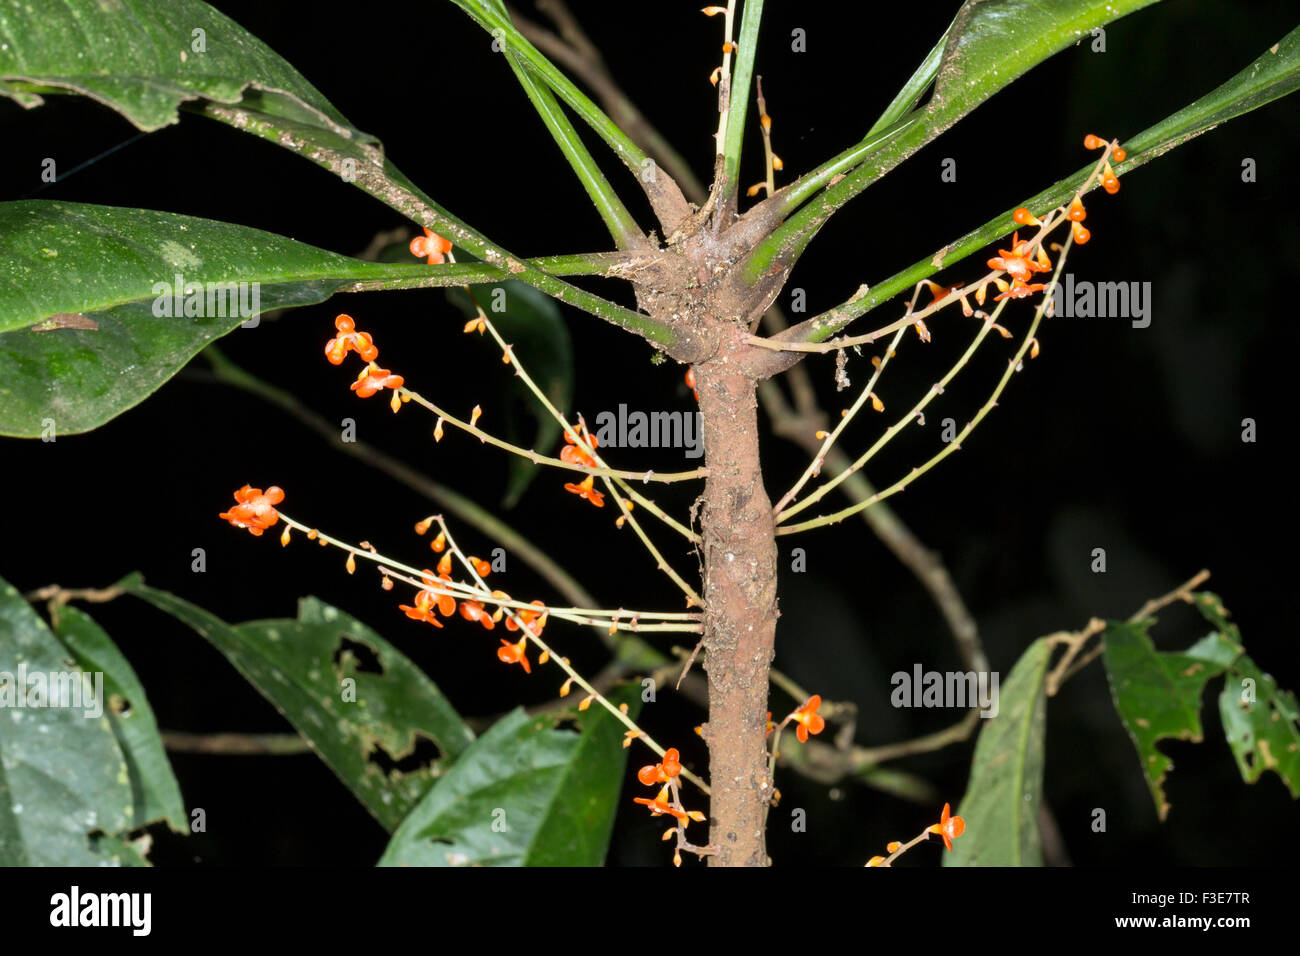 Clavija procera (Theophrastaceae). Utilisé comme un remède par la morsure de serpent Indiens Quichua en Amazonie équatorienne Banque D'Images